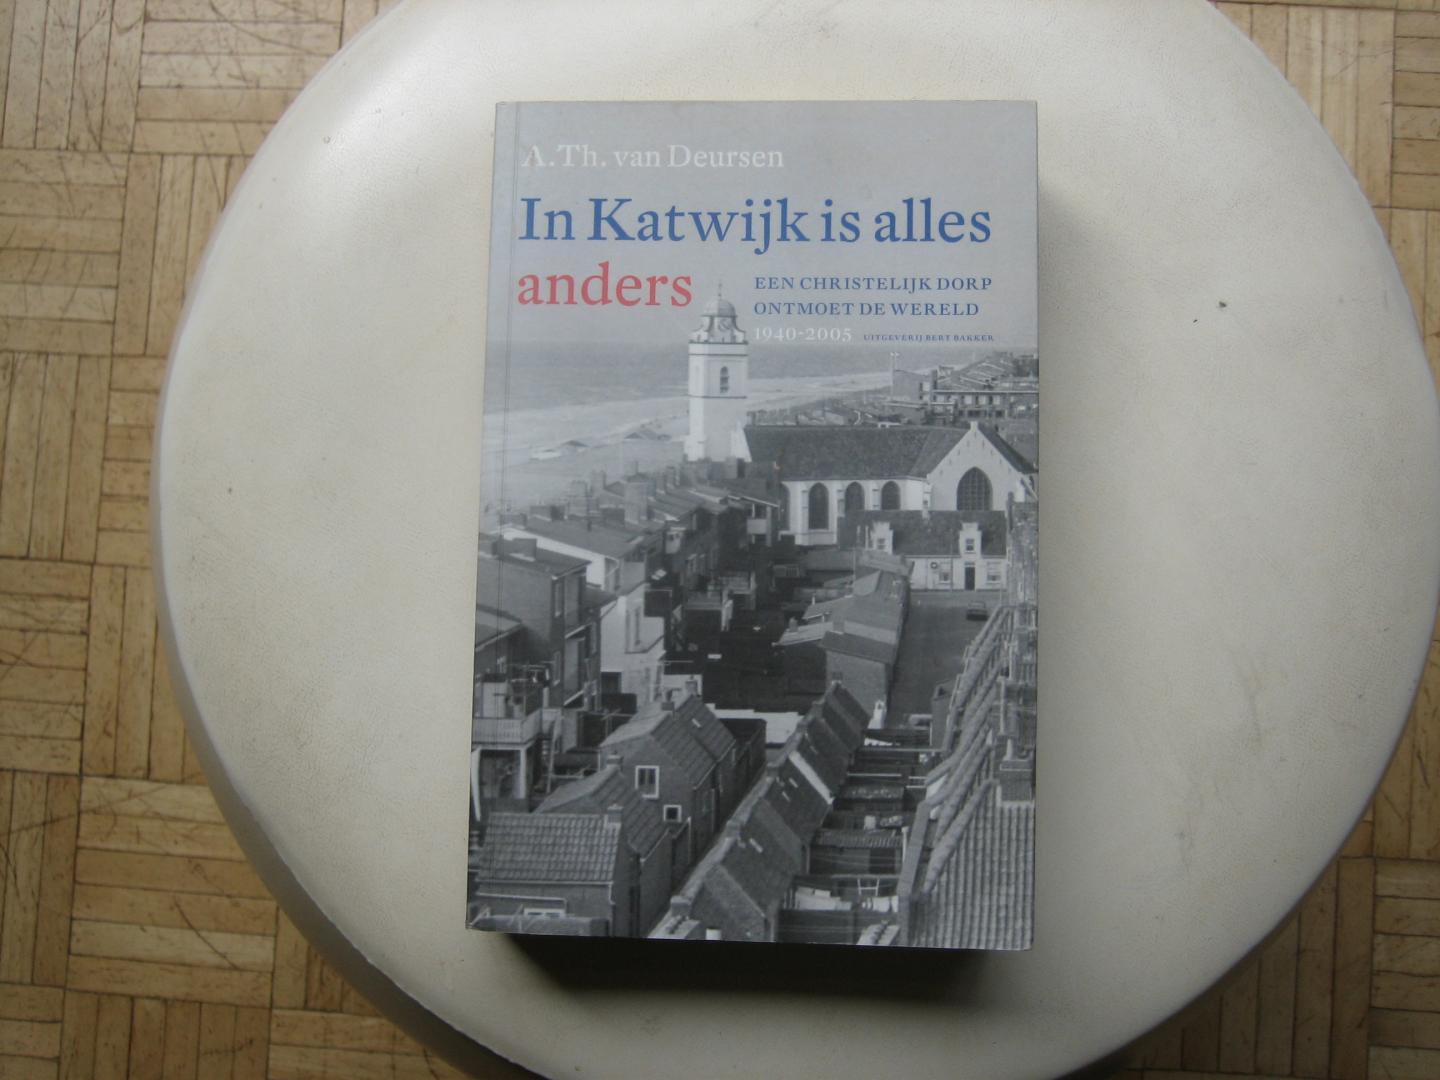 A. Th. van Deursen - In Katwijk is alles anders / Een christelijk dorp ontmoet de wereld 1940-2005